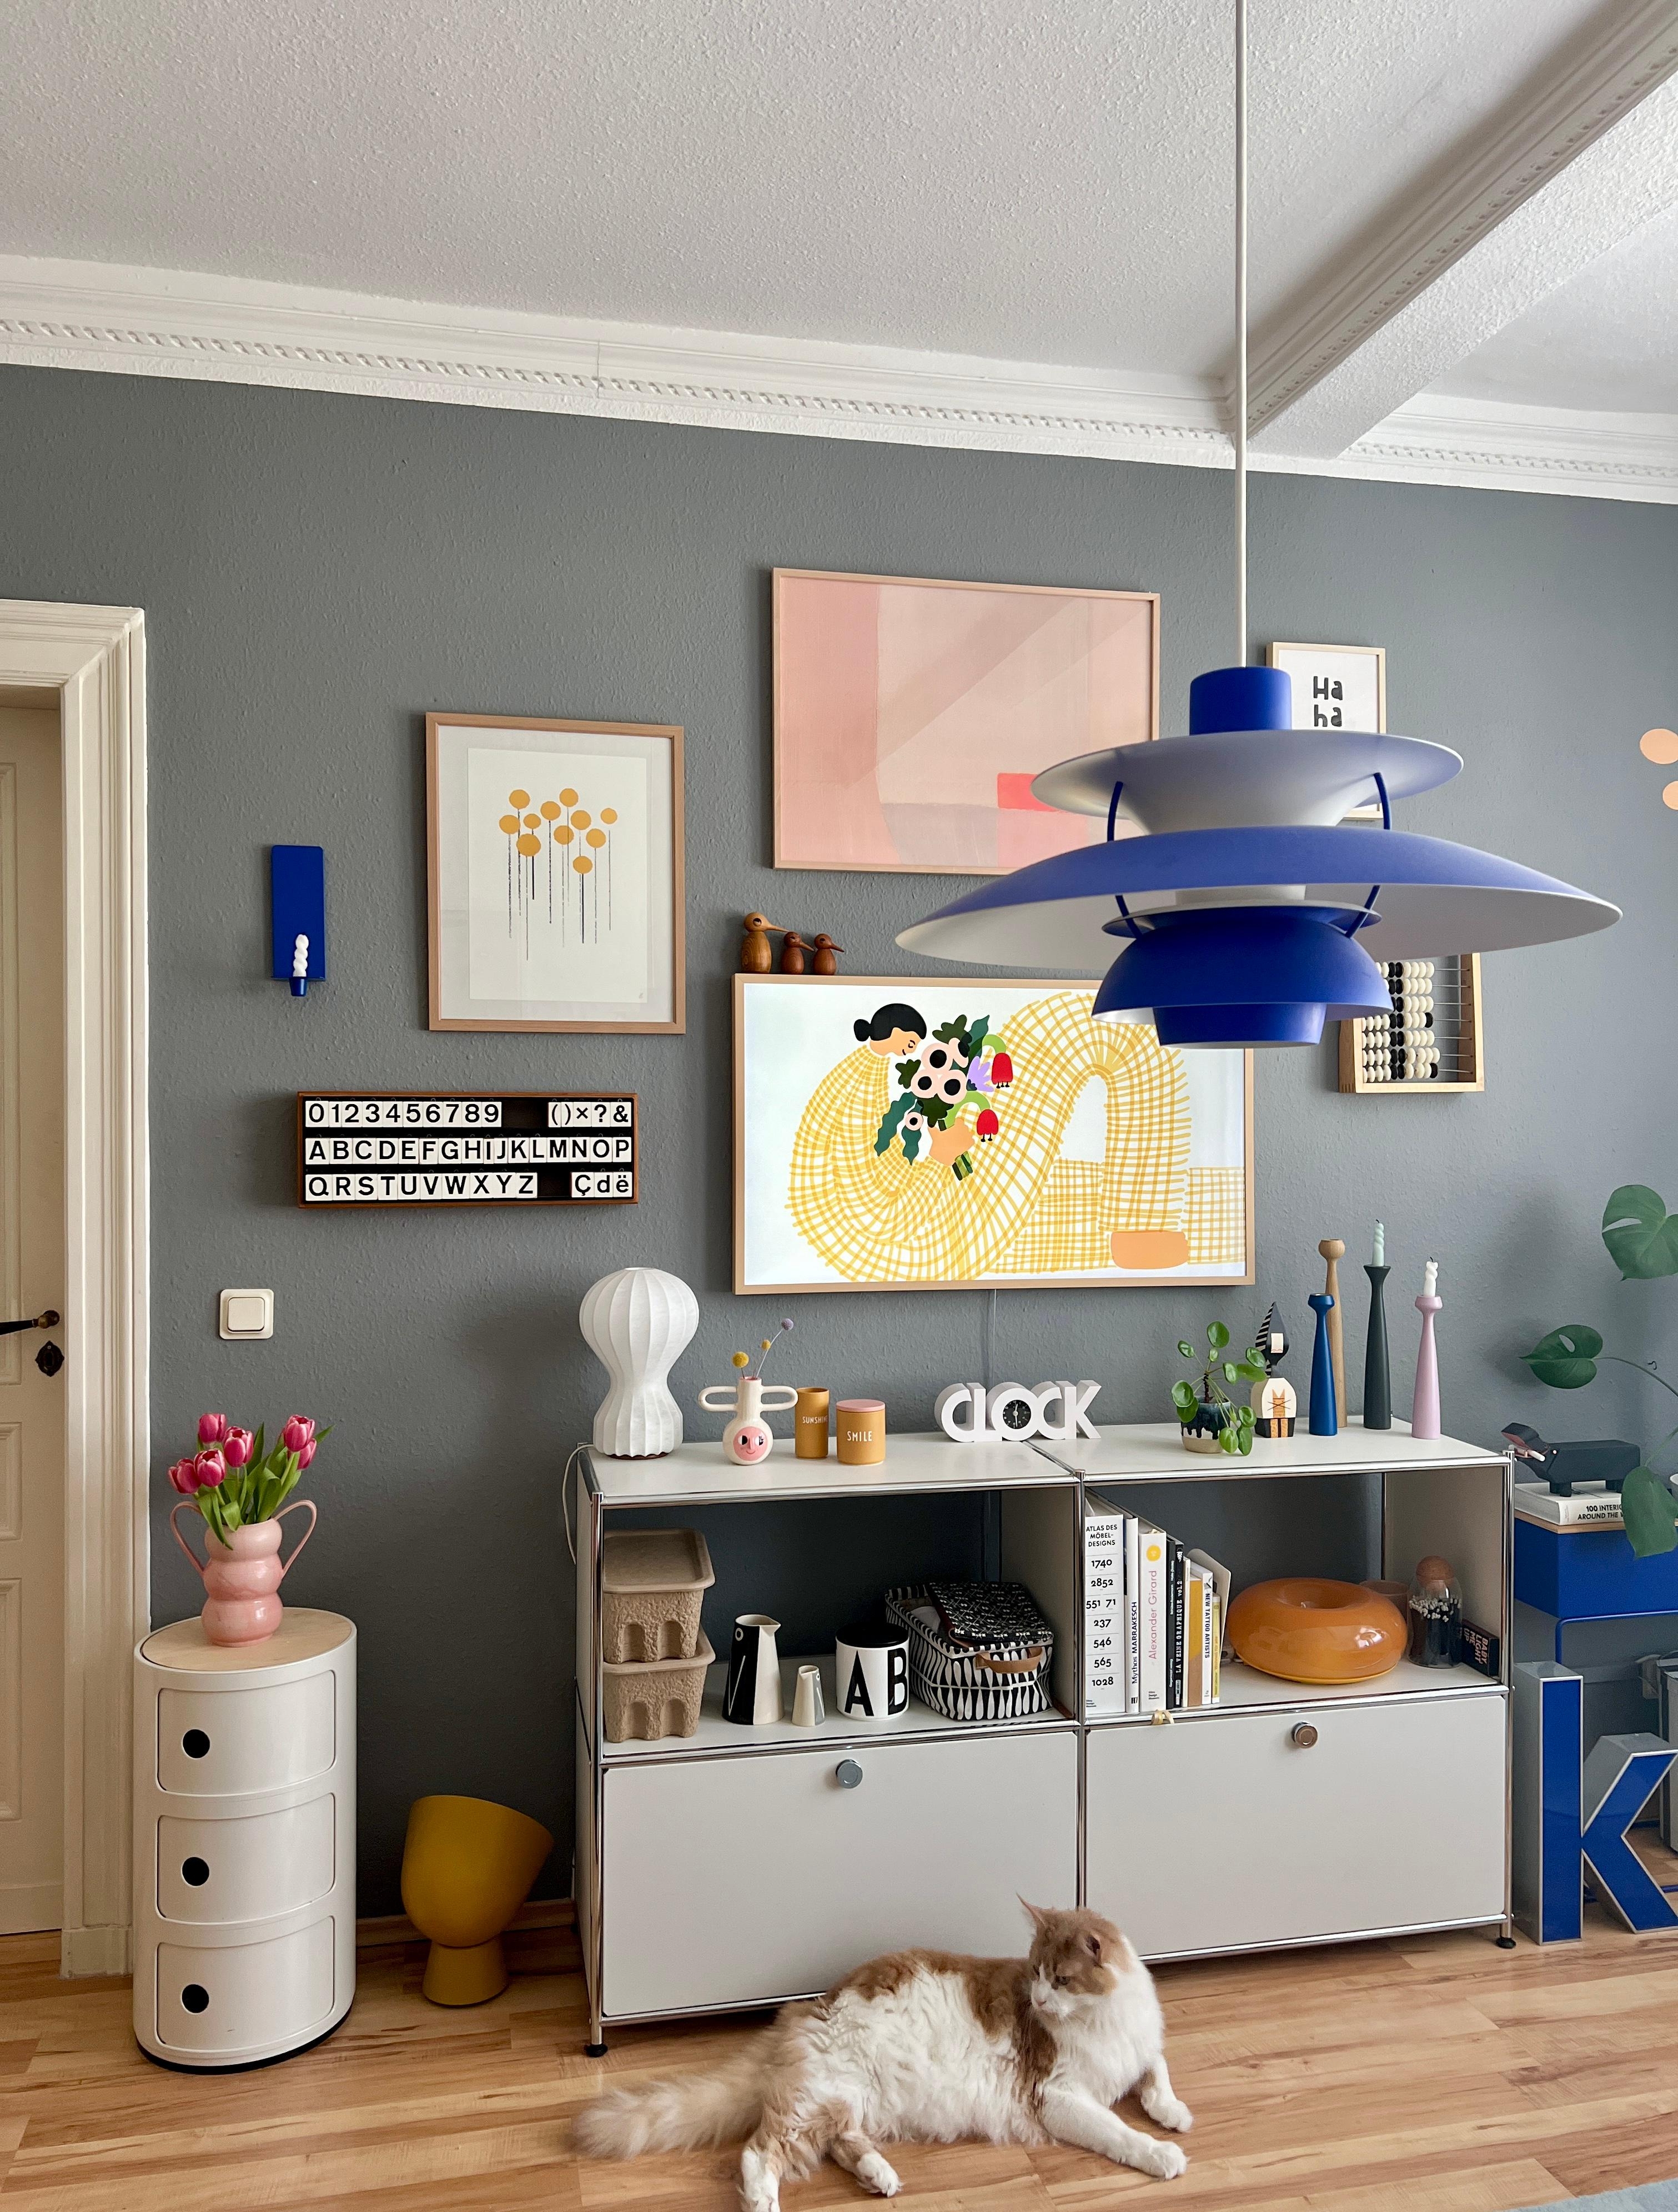 #interior #interiordesign #couchliebt #wohnzimmer #katze #haustier #ph5 #blau #gallerywall #altbau #frame #spring #frühling #tulpen #rosa